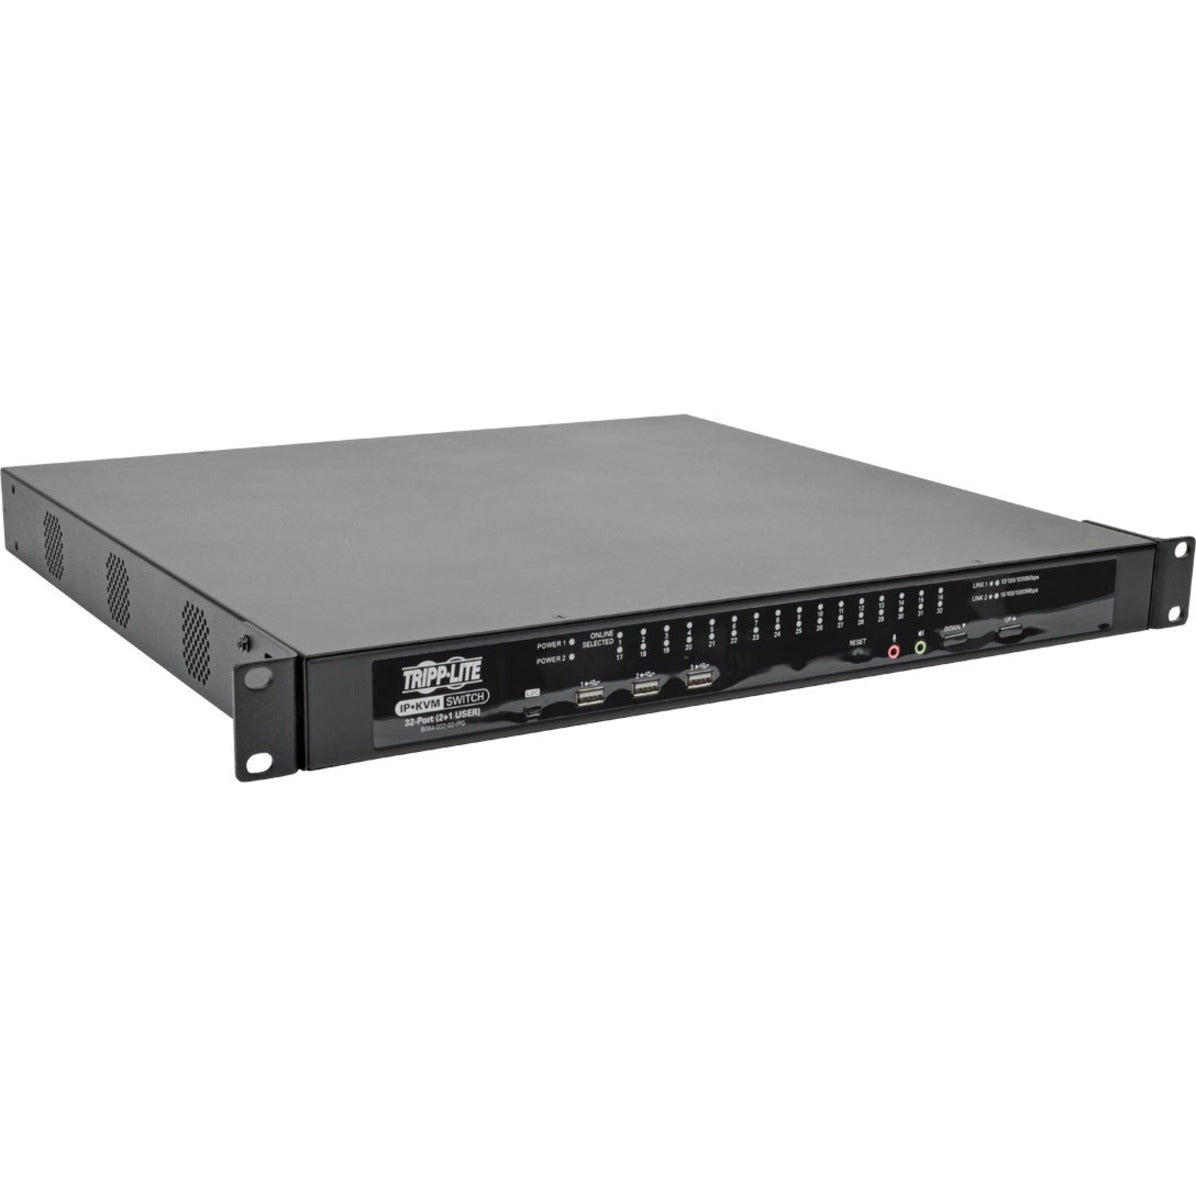 Tripp Lite B064-032-02-IPG NetDirector KVM Switchbox，32端口，3年保修，TAA合规品牌名：Tripp Lite品牌翻译：凯普力